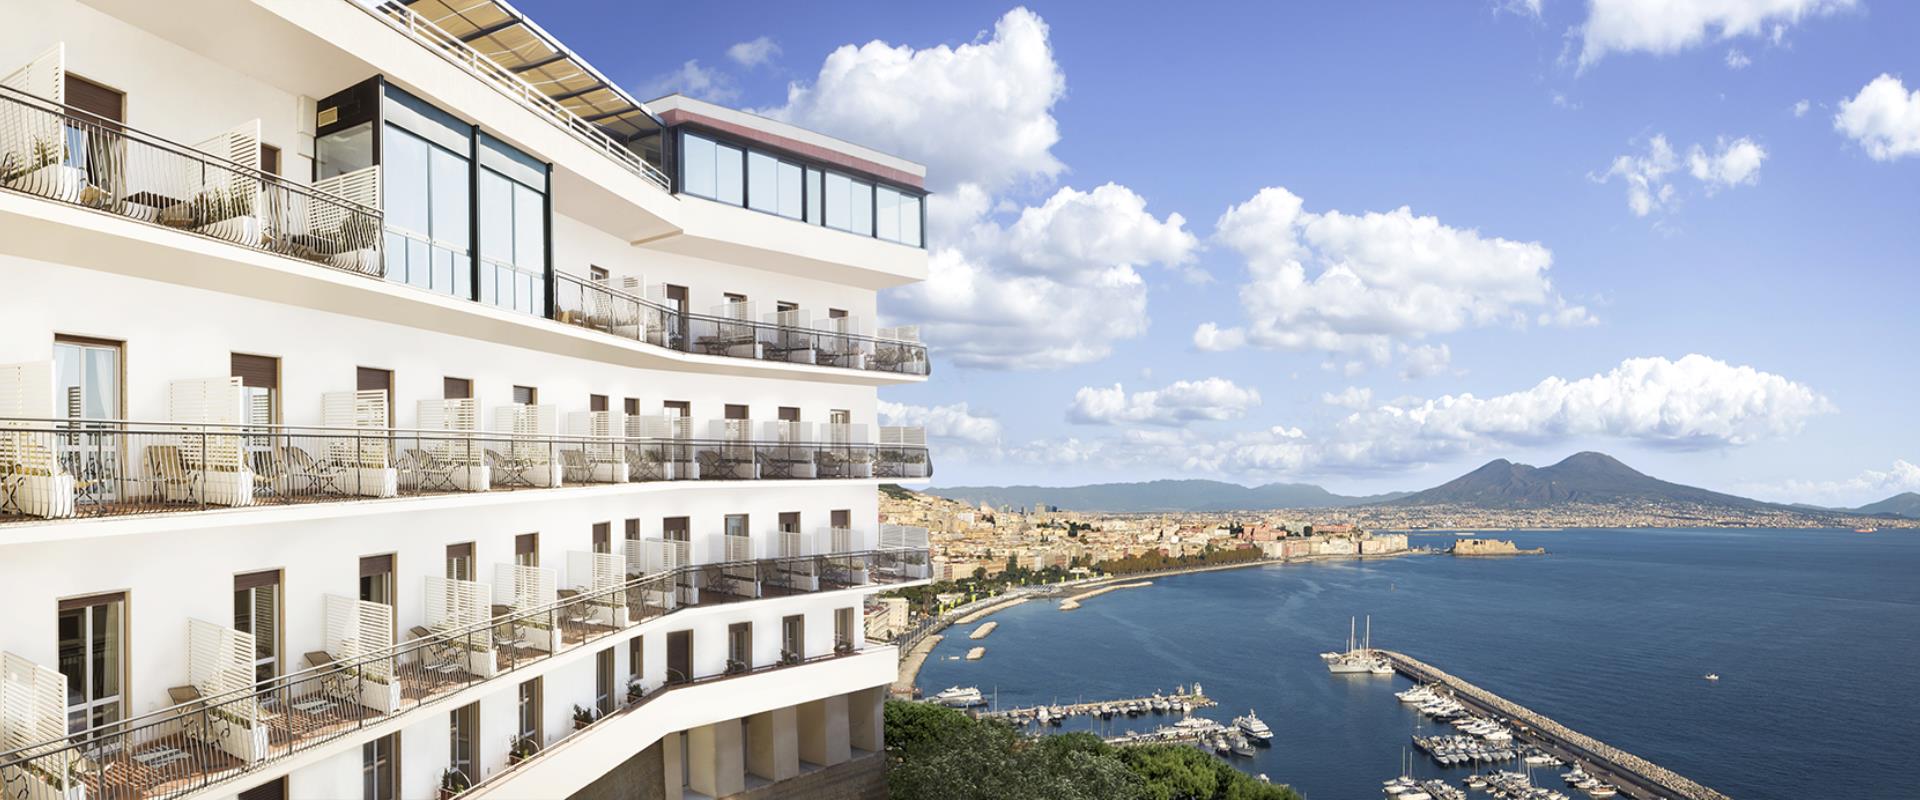 BW Signature Collection Hotel Paradiso Naples-Hotel 4 Sterne in Posillipo mit einer unglaublichen Aussicht auf die Bucht von Neapel